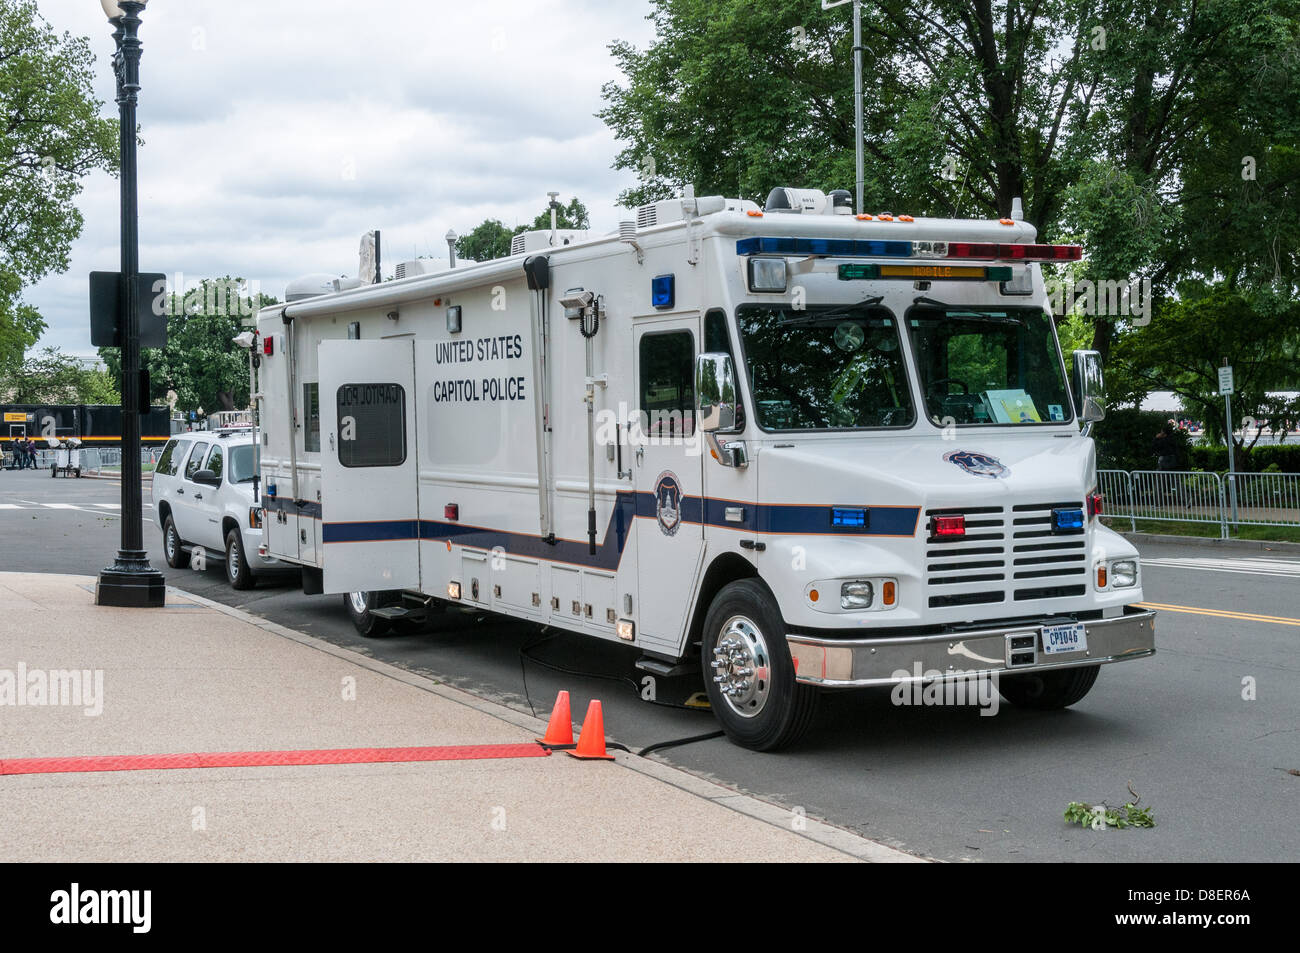 United States Capitol Police Command Vehicle, Washington, DC Stock Photo